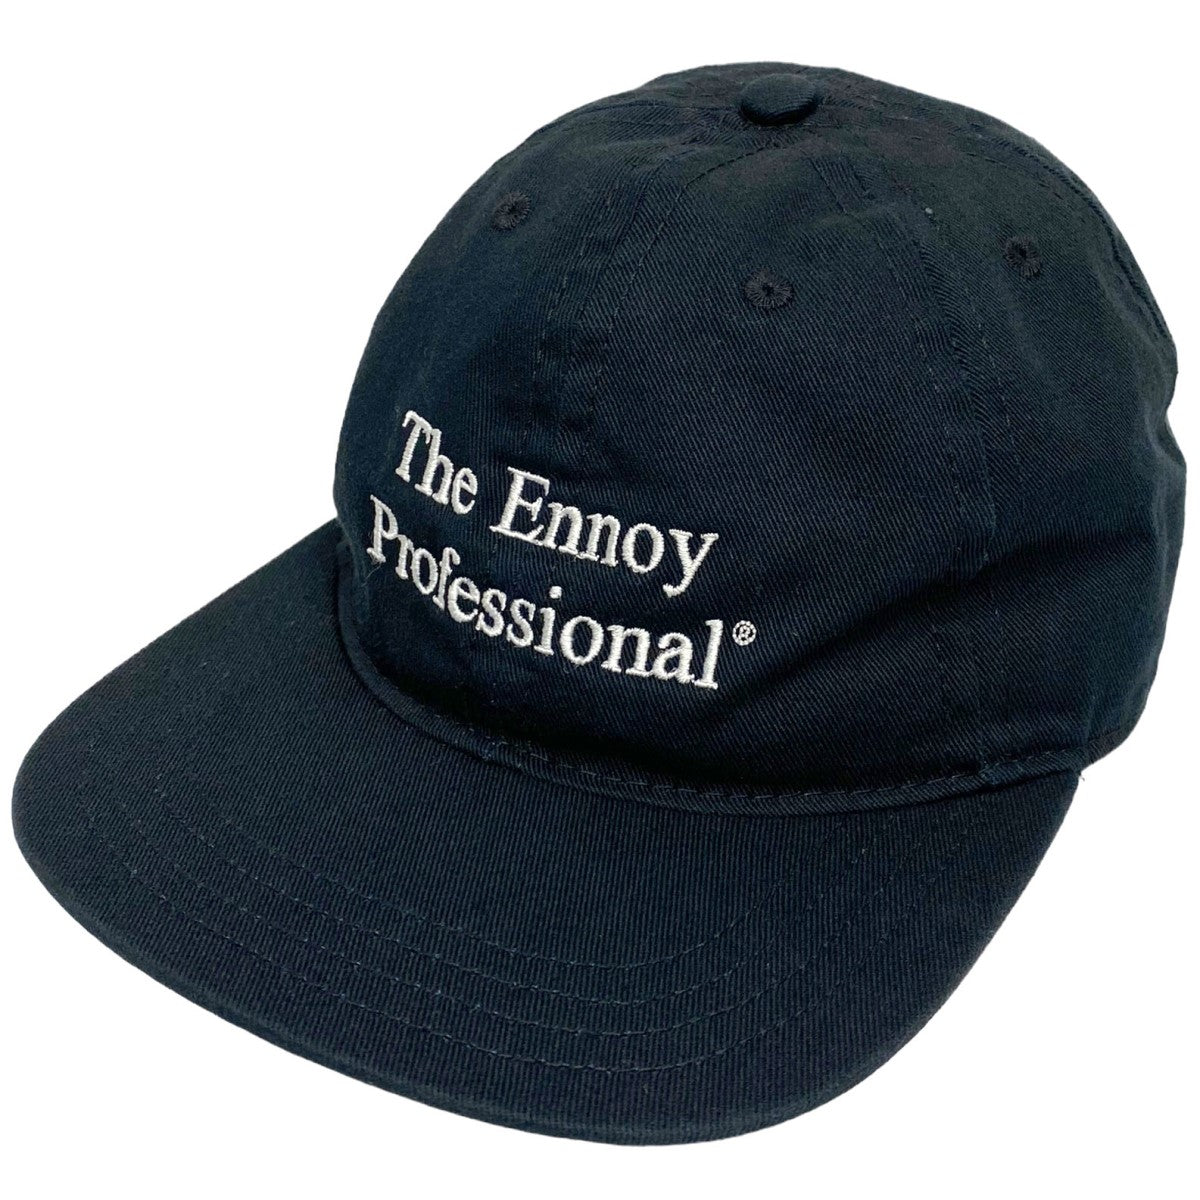 何年か前に購入した物ですThe Ennoy Professional キャップ ブラック